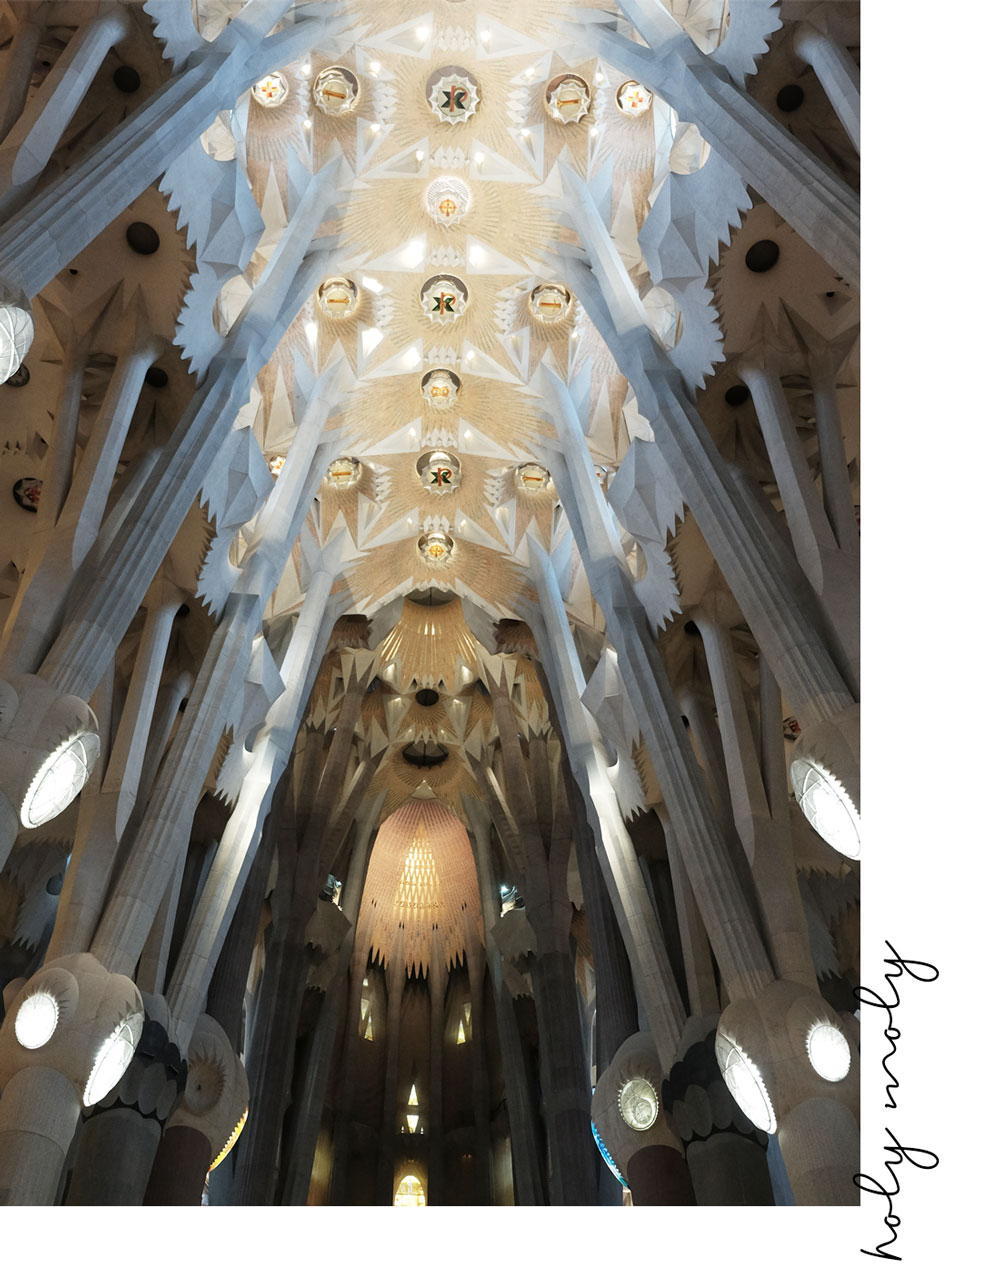 La Sagrada Familia è uno spettacolo da vedere. #1 thing to do in Barcelona | The Good Living Blog #thingstodoinbarcelona #barcelonatravelguide #barcelona #lasagradafamilia